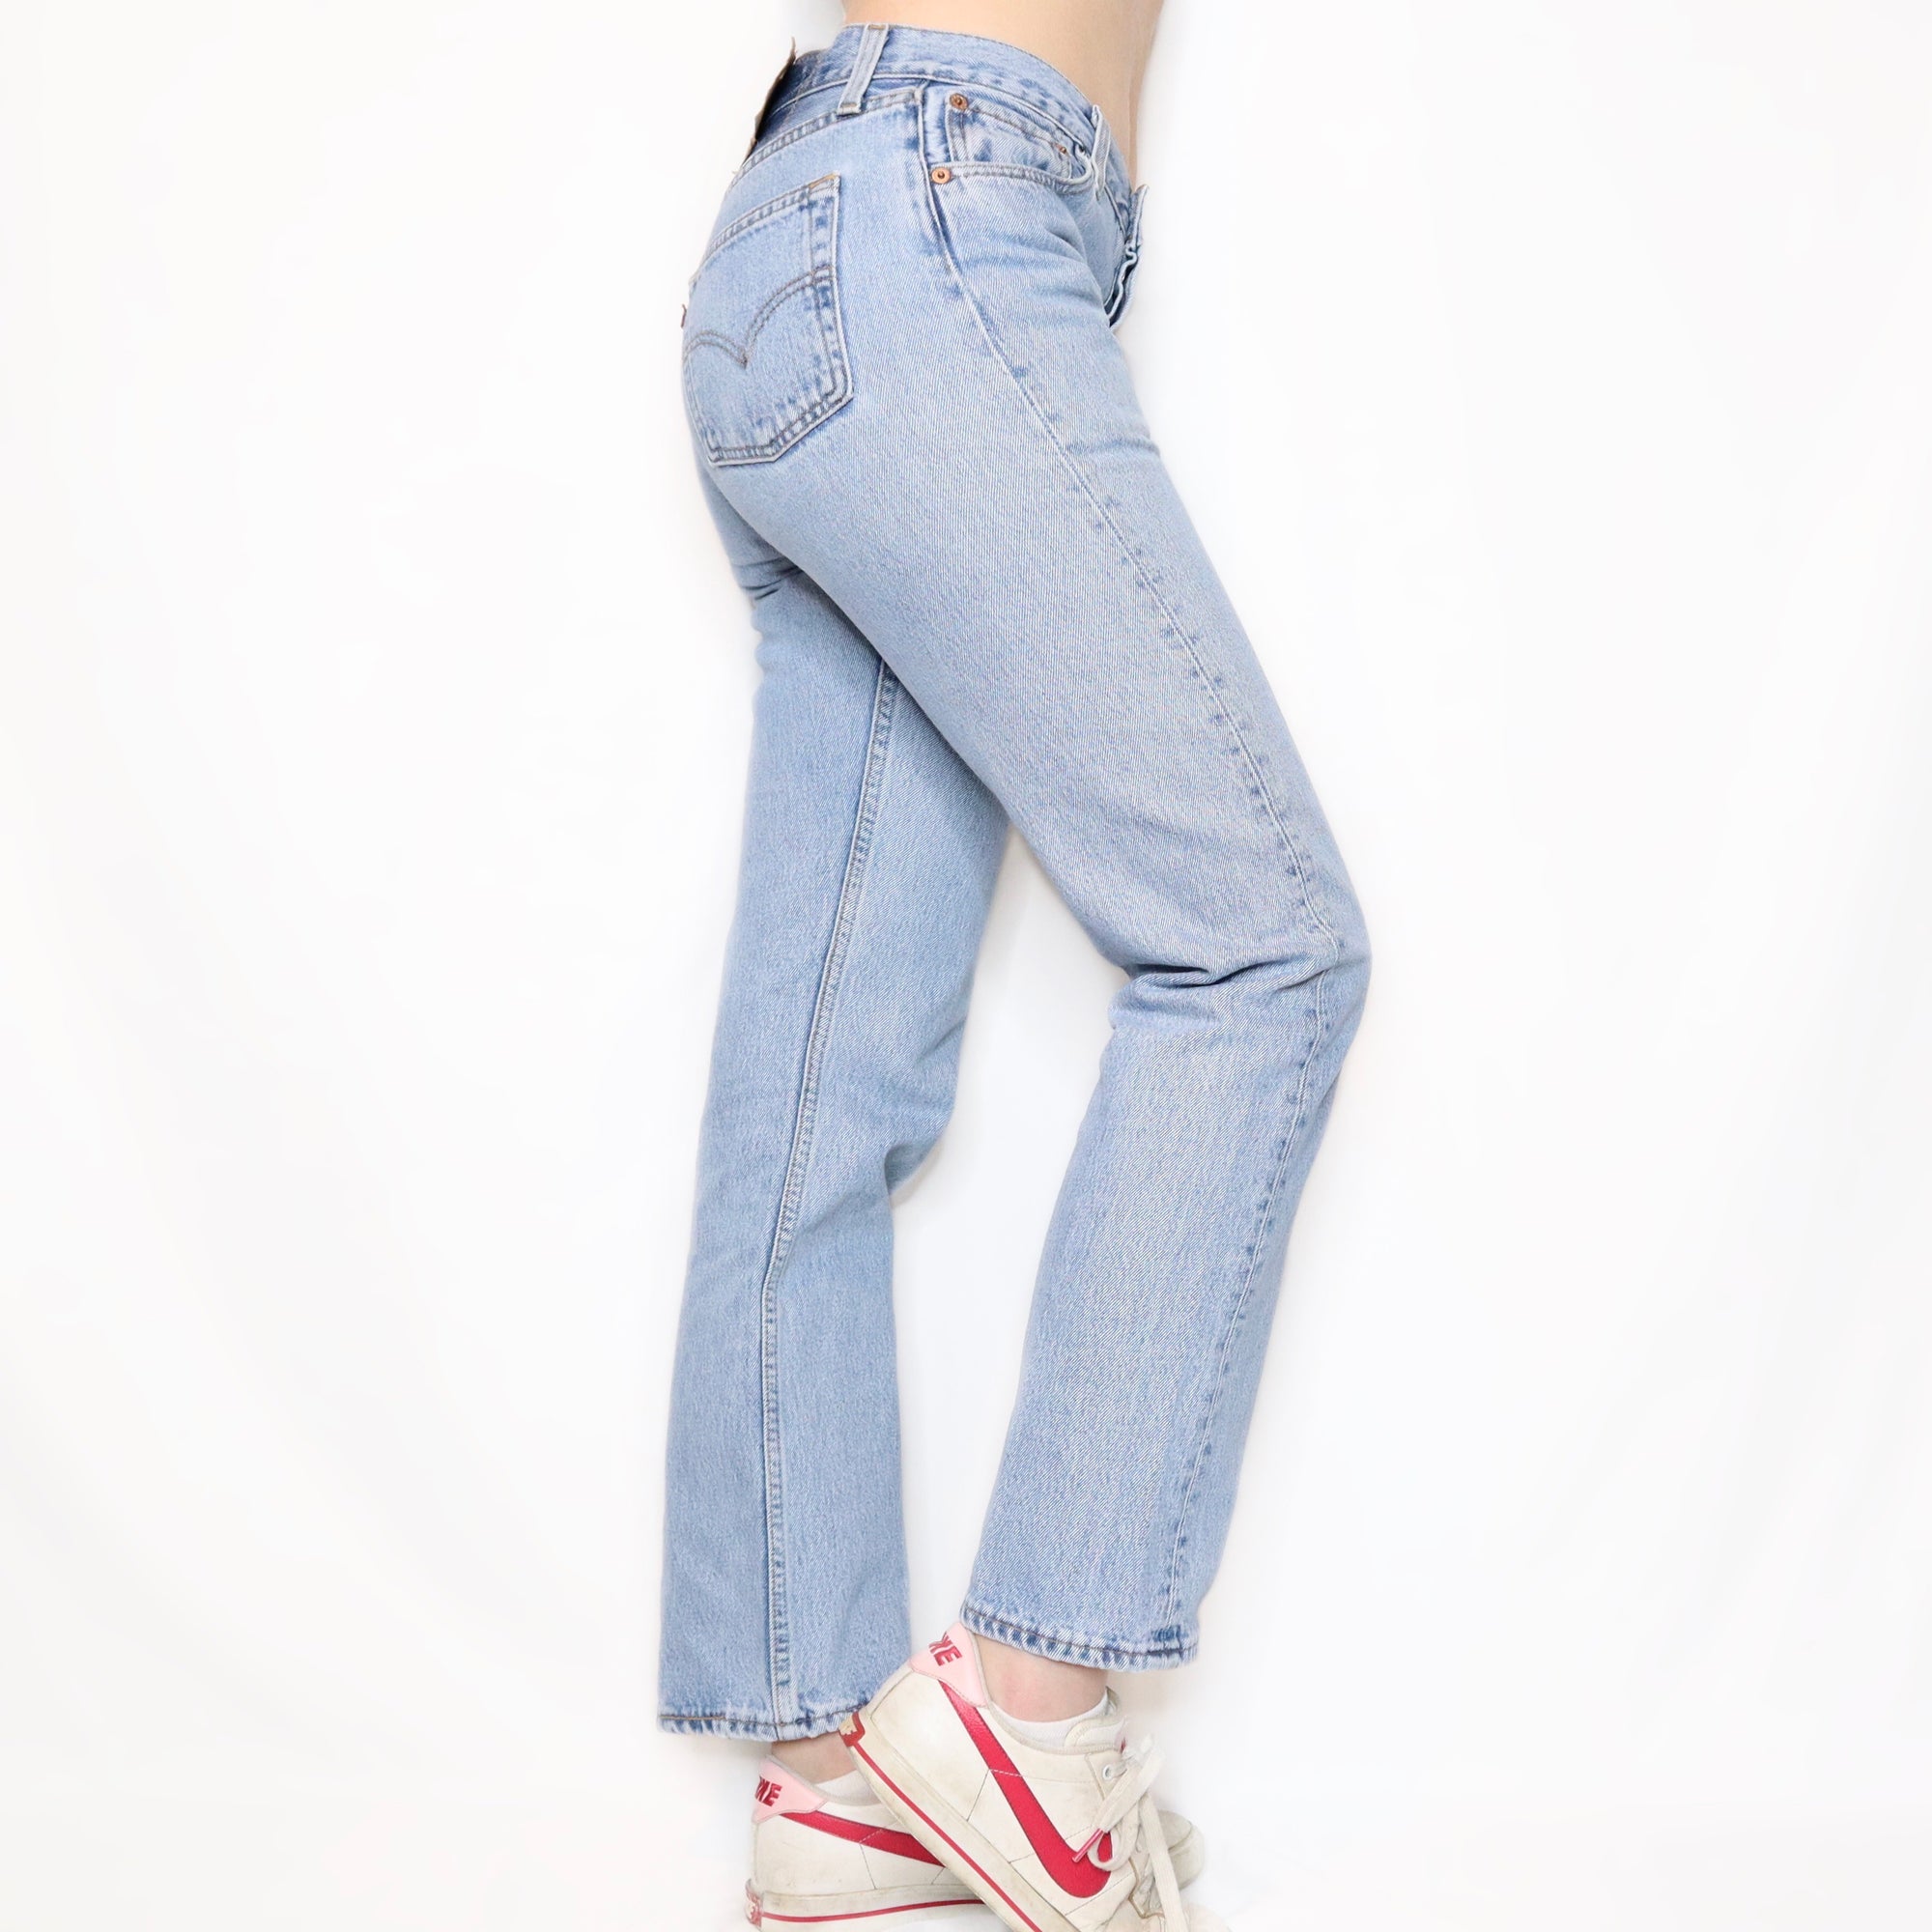 Vintage 90s Mid Rise 501 Levis Jeans